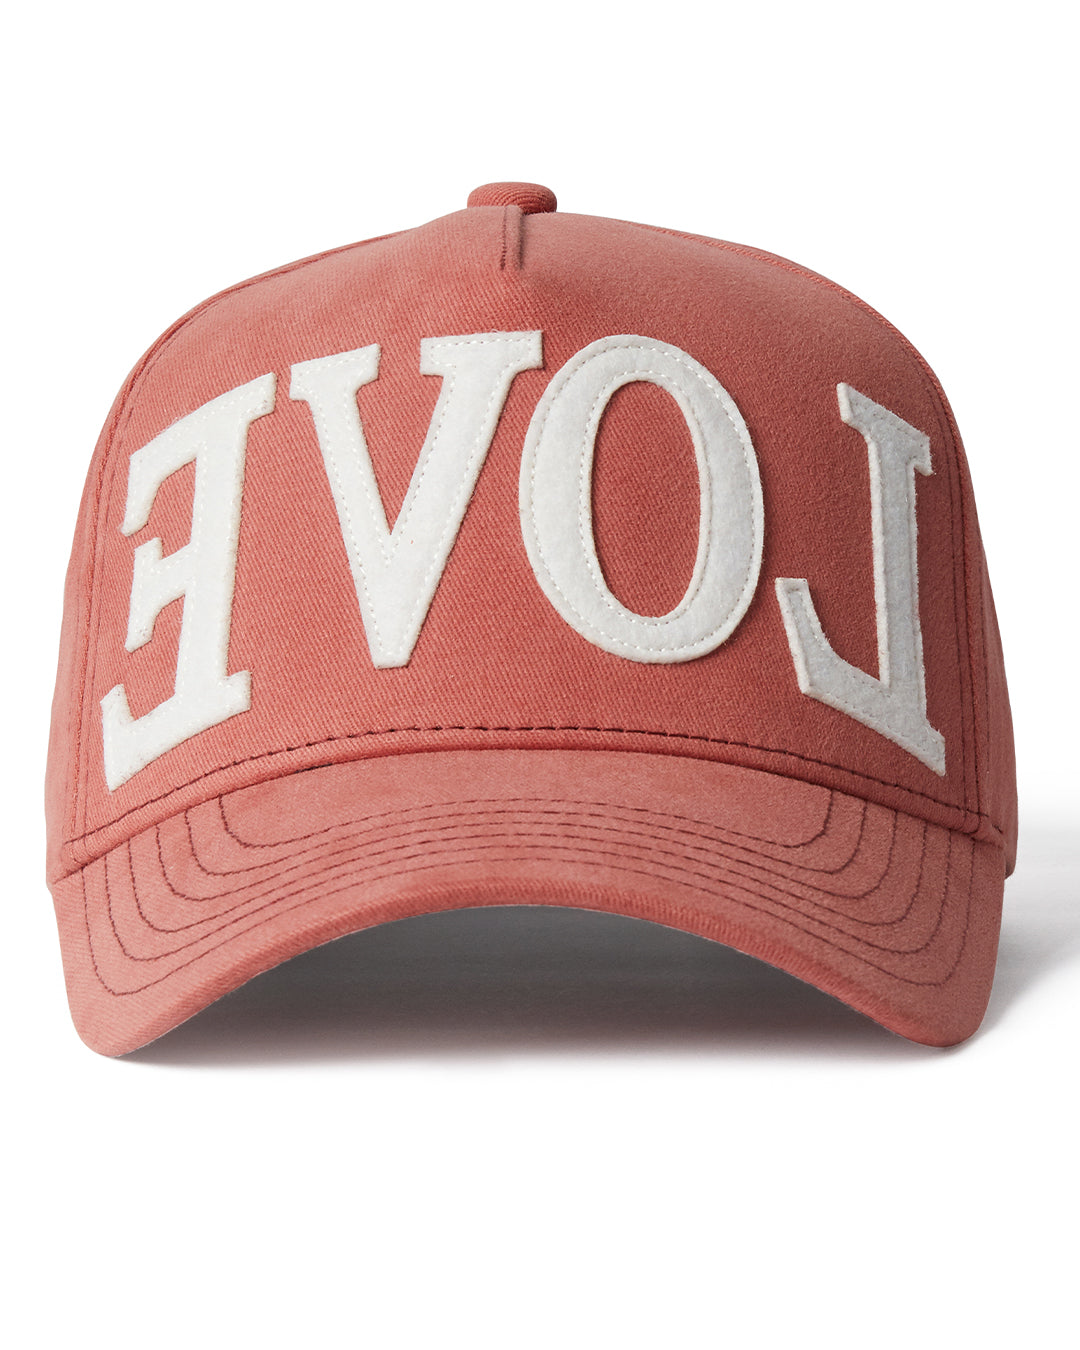 Freshiam HAT OS Mocha "EVOL" Hat